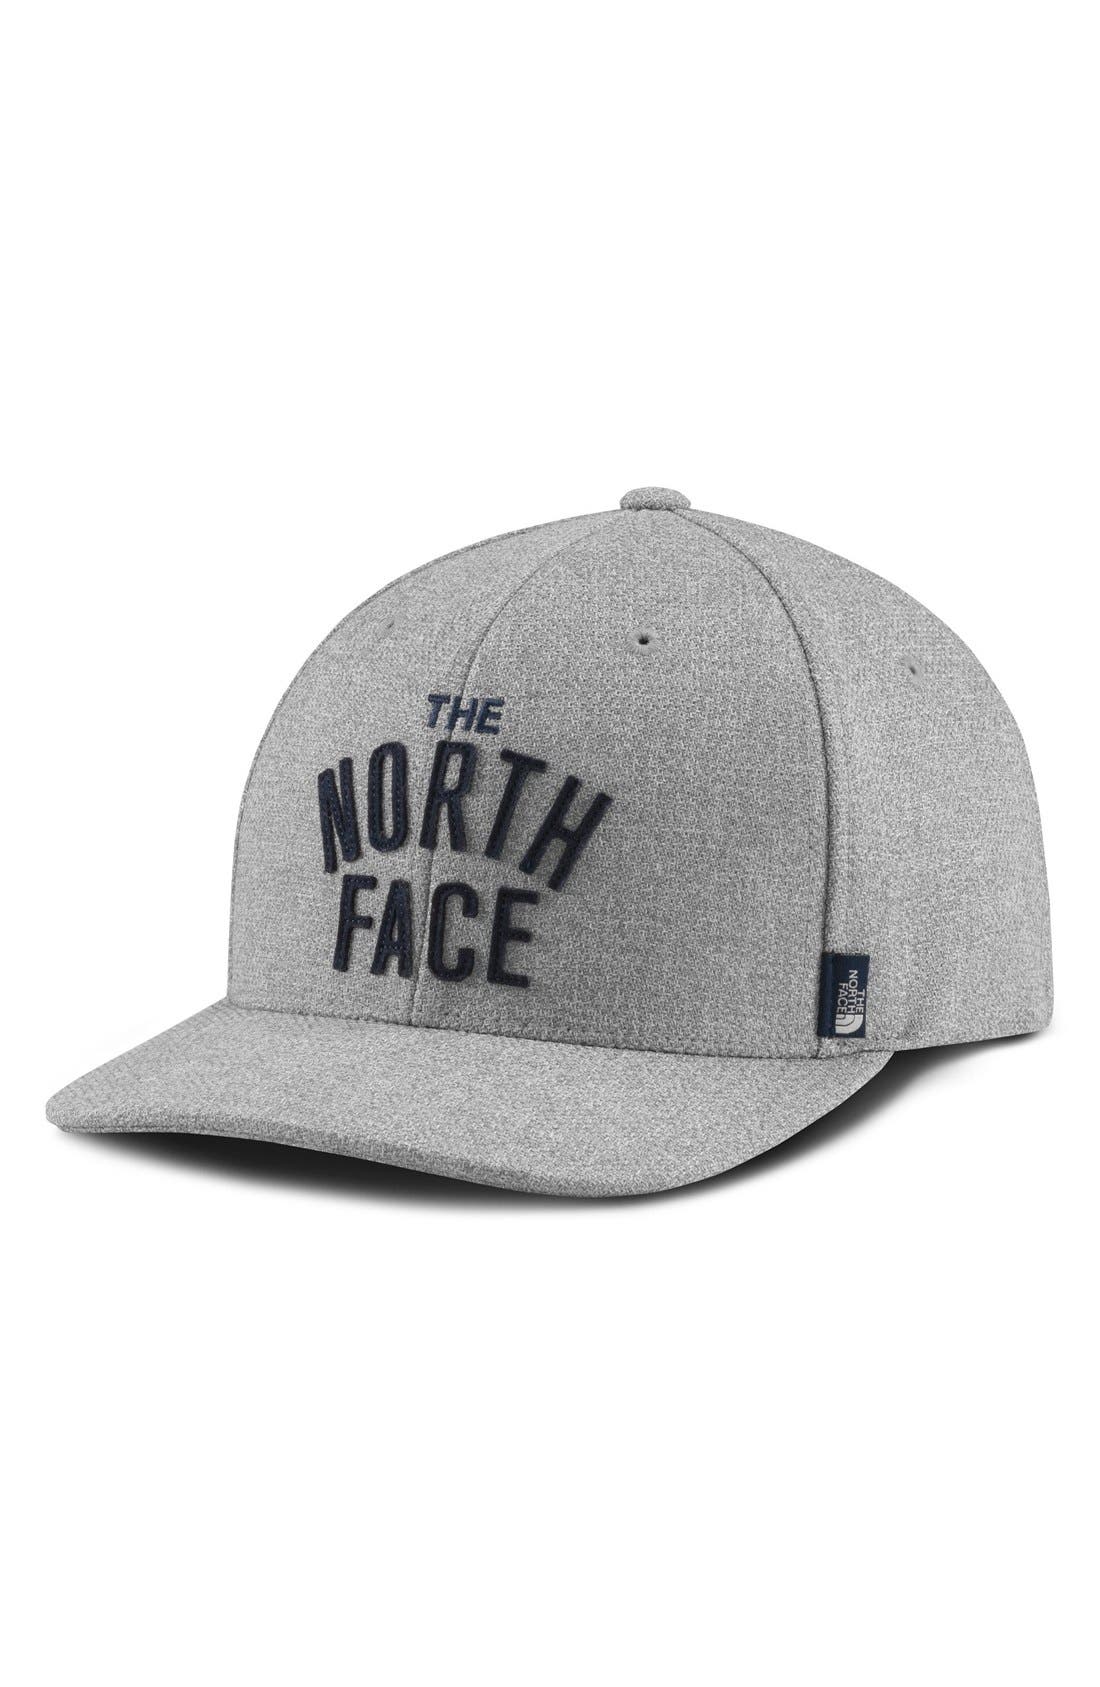 north face flexfit 110 hat